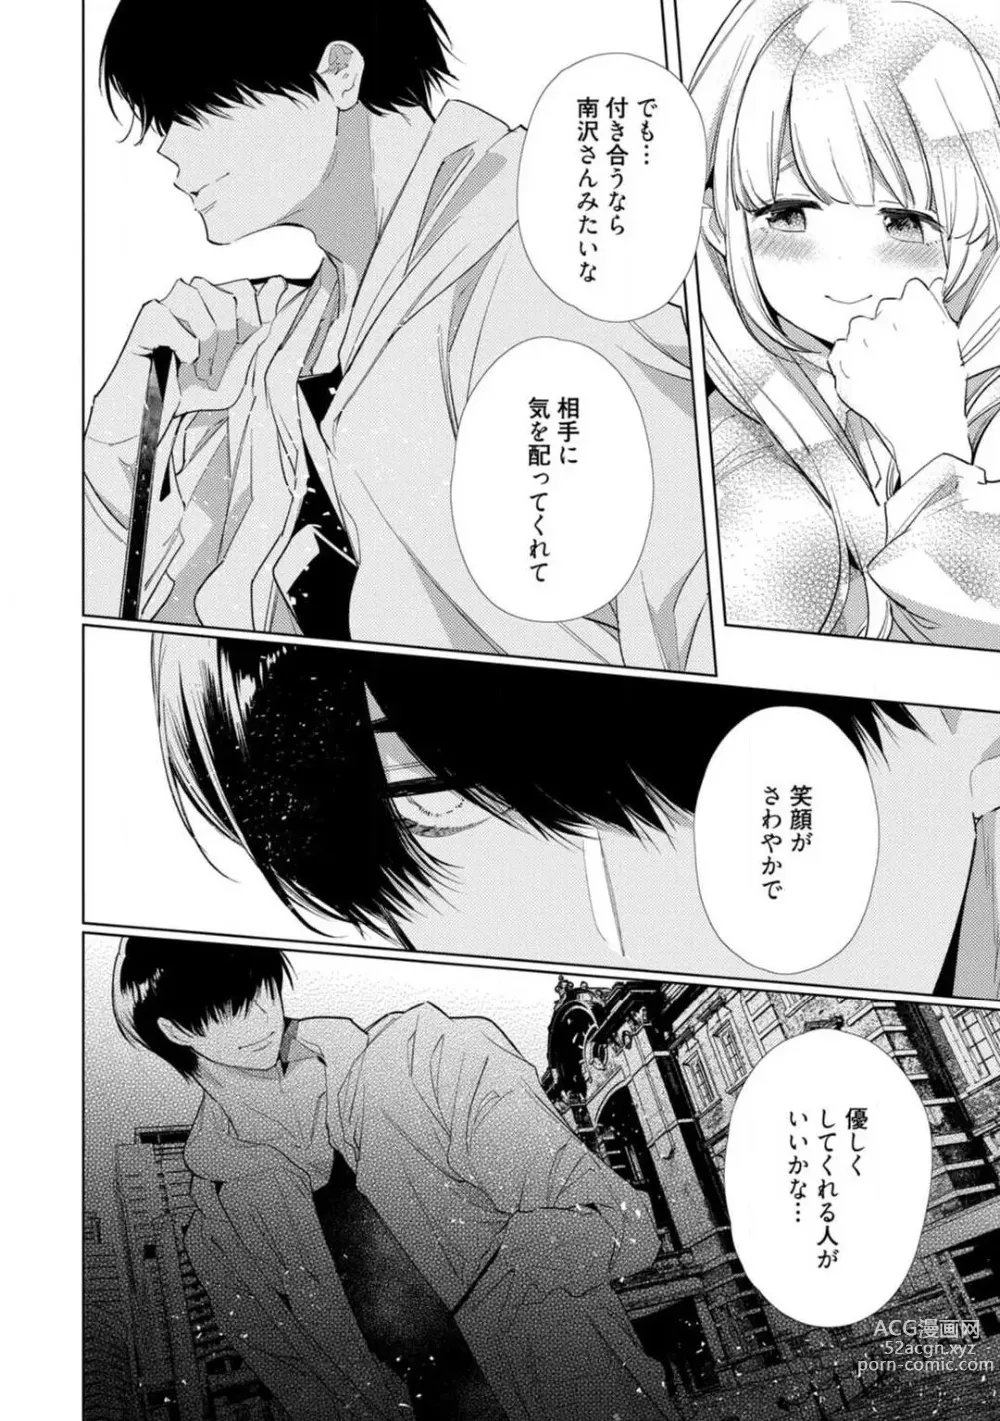 Page 9 of manga Kuroneko Osananajimi ga Nigashite Kurenai. 1-10